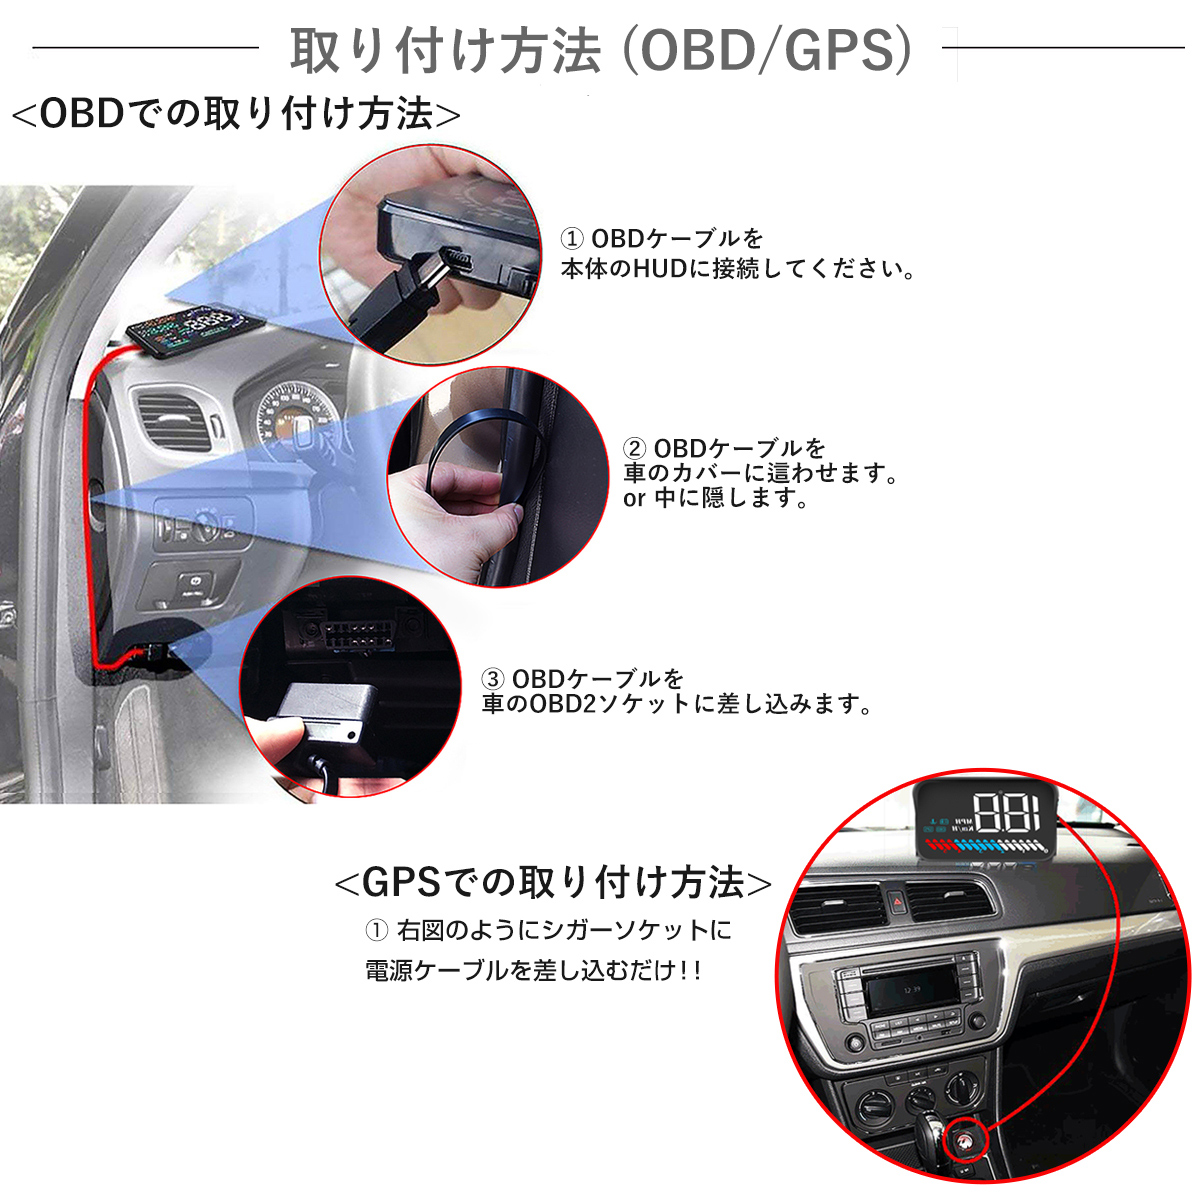 ヤマダモール | ヘッドアップディスプレイ HUD M7 OBD2/GPS 速度計 車